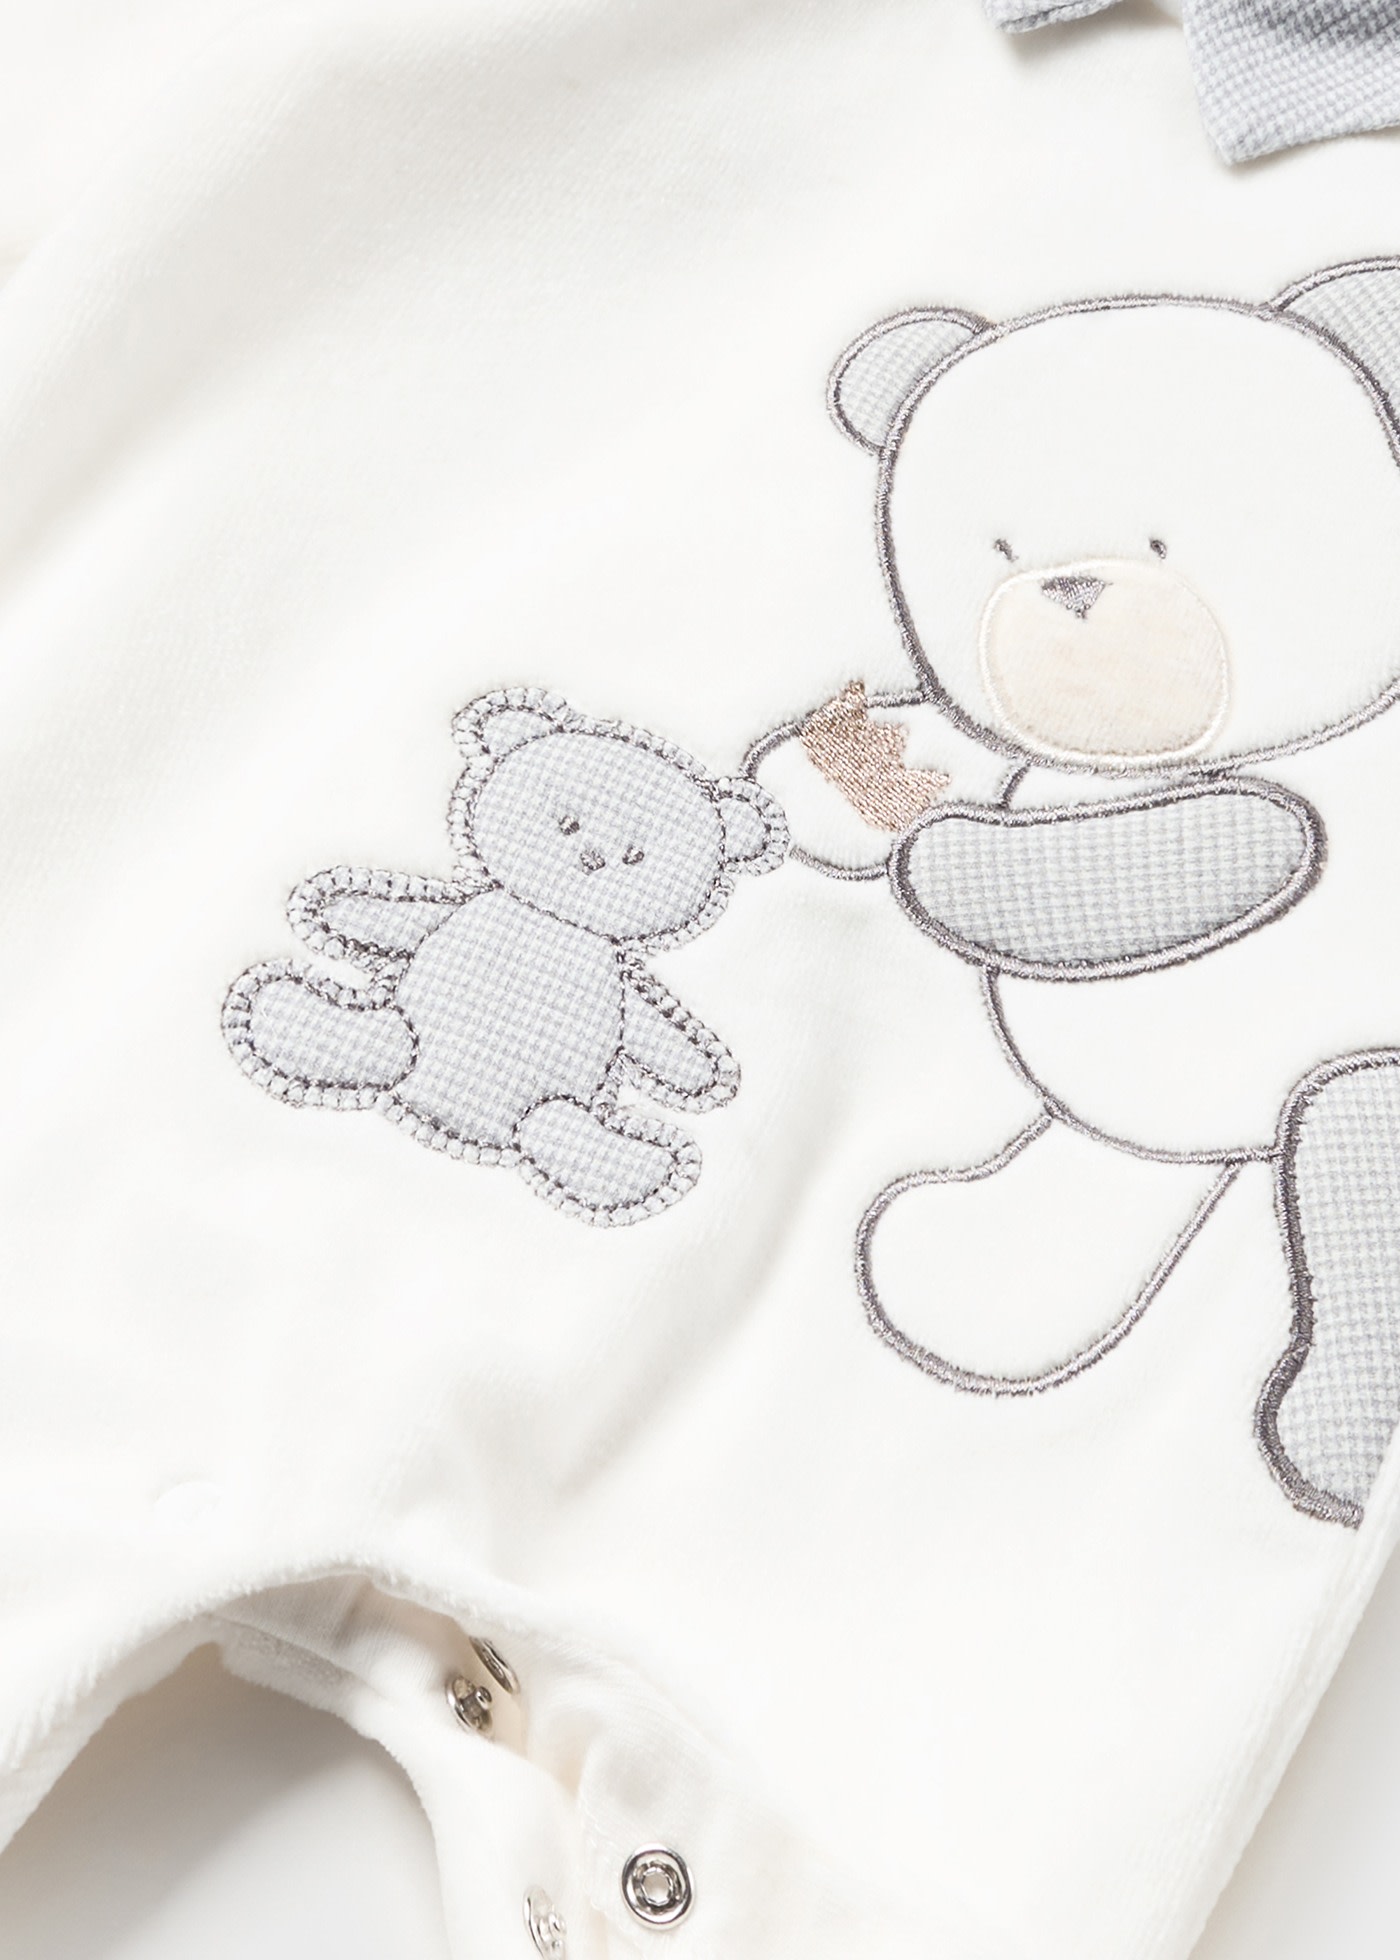 Un pyjama velours bébé Arthur étoile doux et élégant